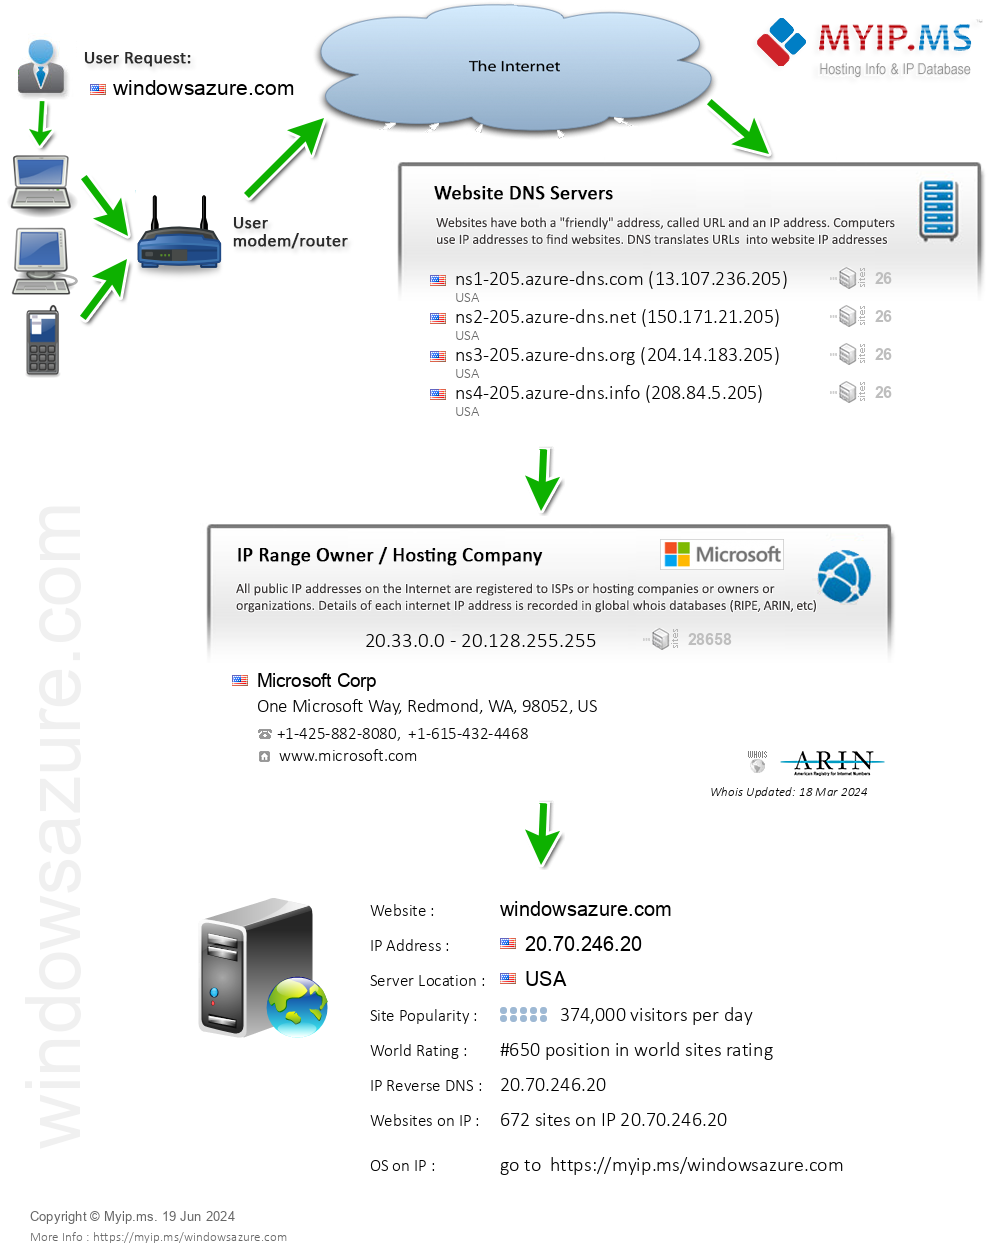 Windowsazure.com - Website Hosting Visual IP Diagram